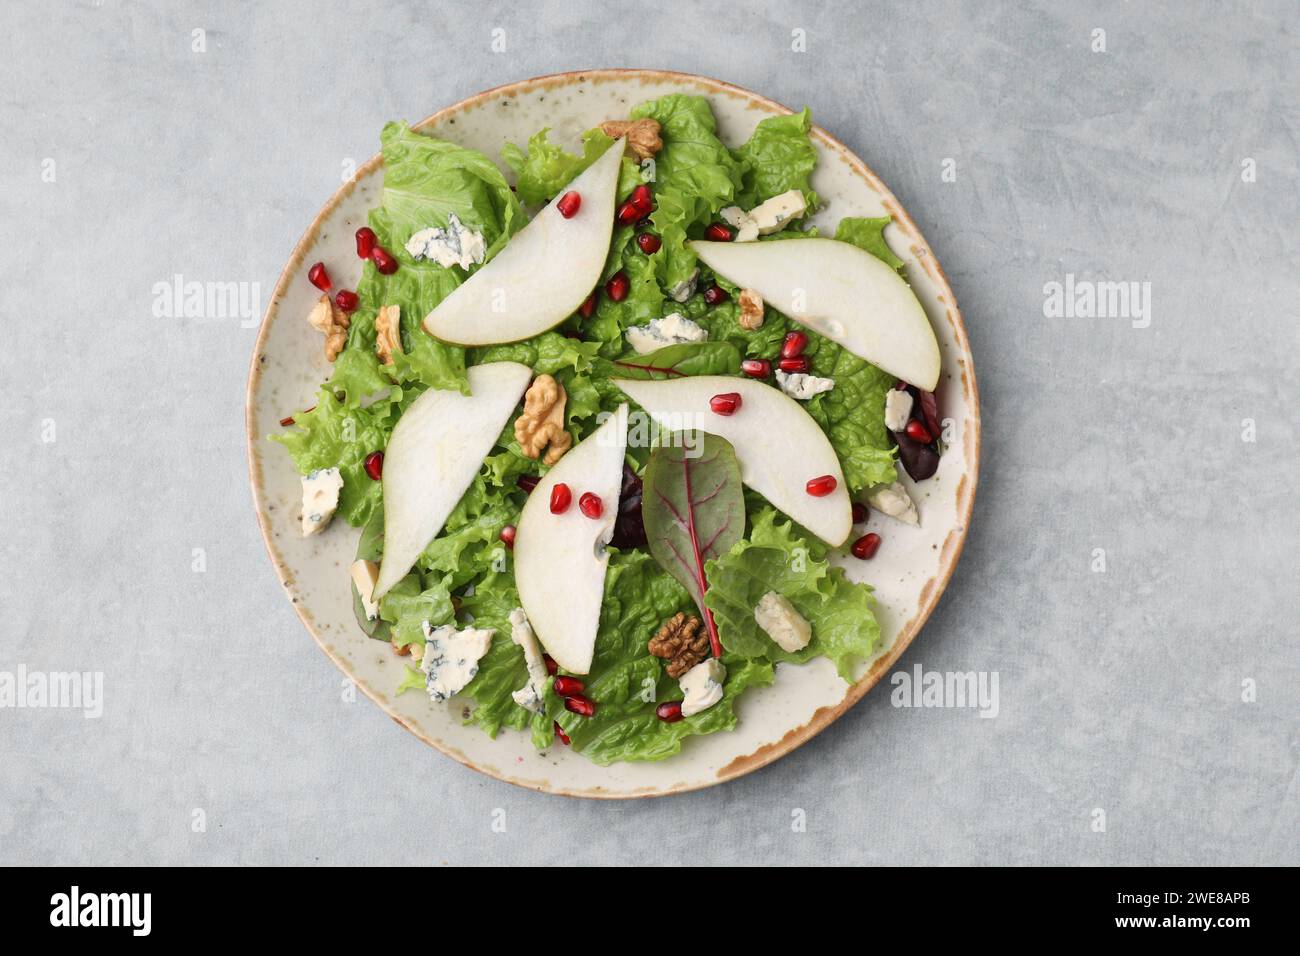 Assiette avec une délicieuse salade de poires sur une table texturée grise, vue de dessus Banque D'Images